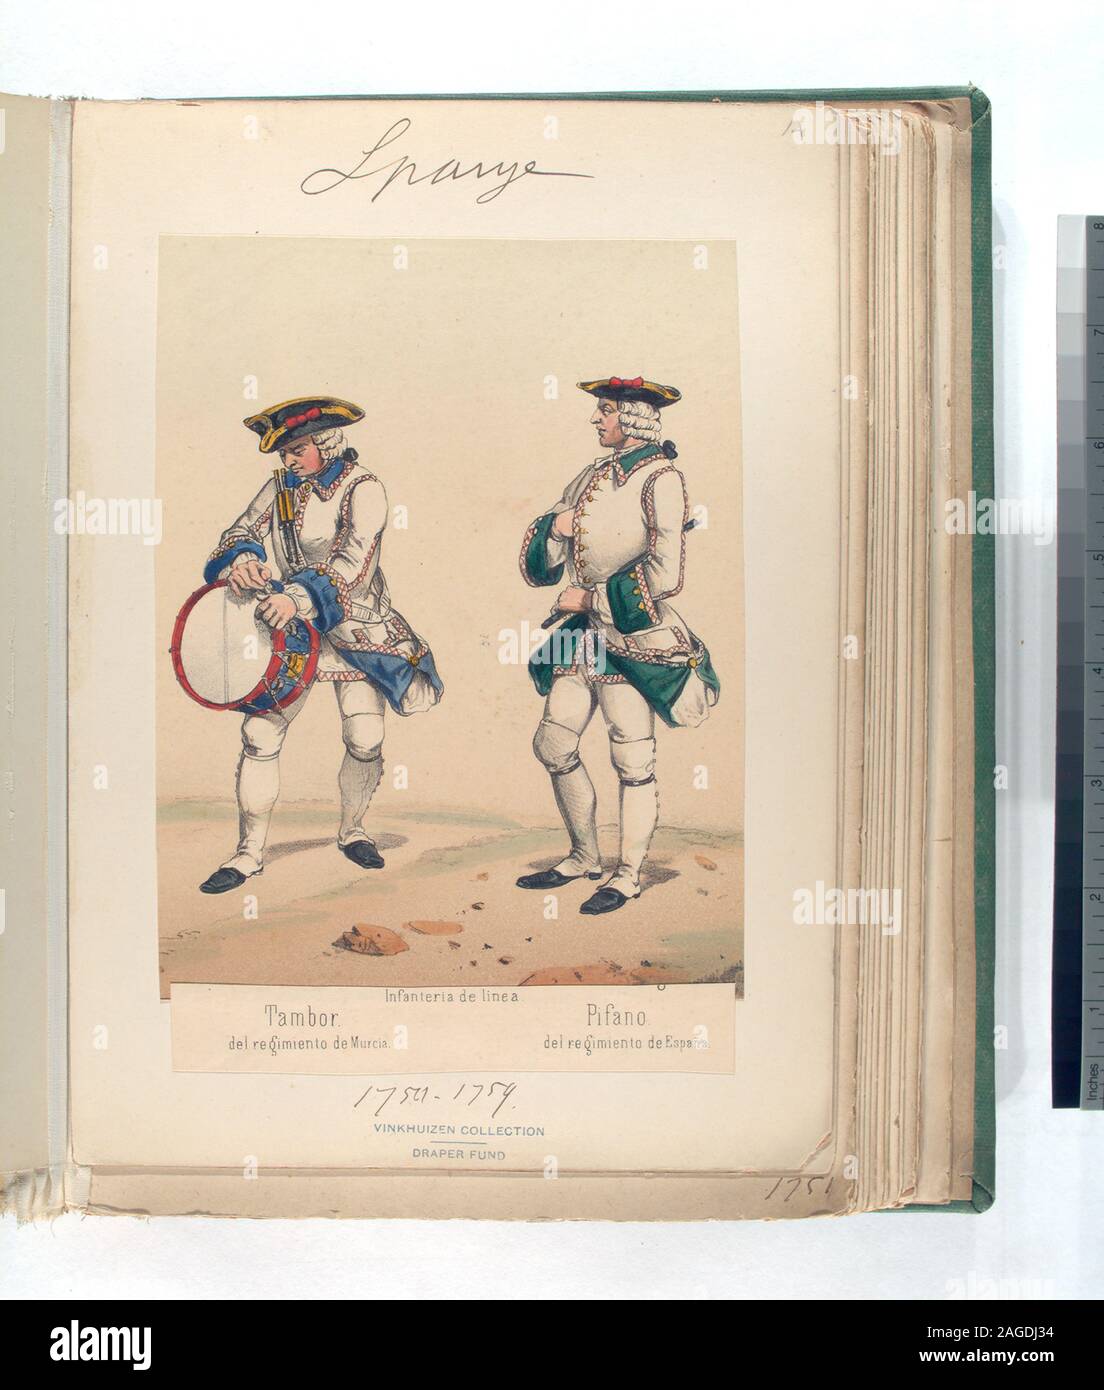 The Draper Fund; Infanteria de linea. [a] Tambor, del regimiento de Murcia; [b] Pifano, del regimiento de España. 1750-1759 Stock Photo